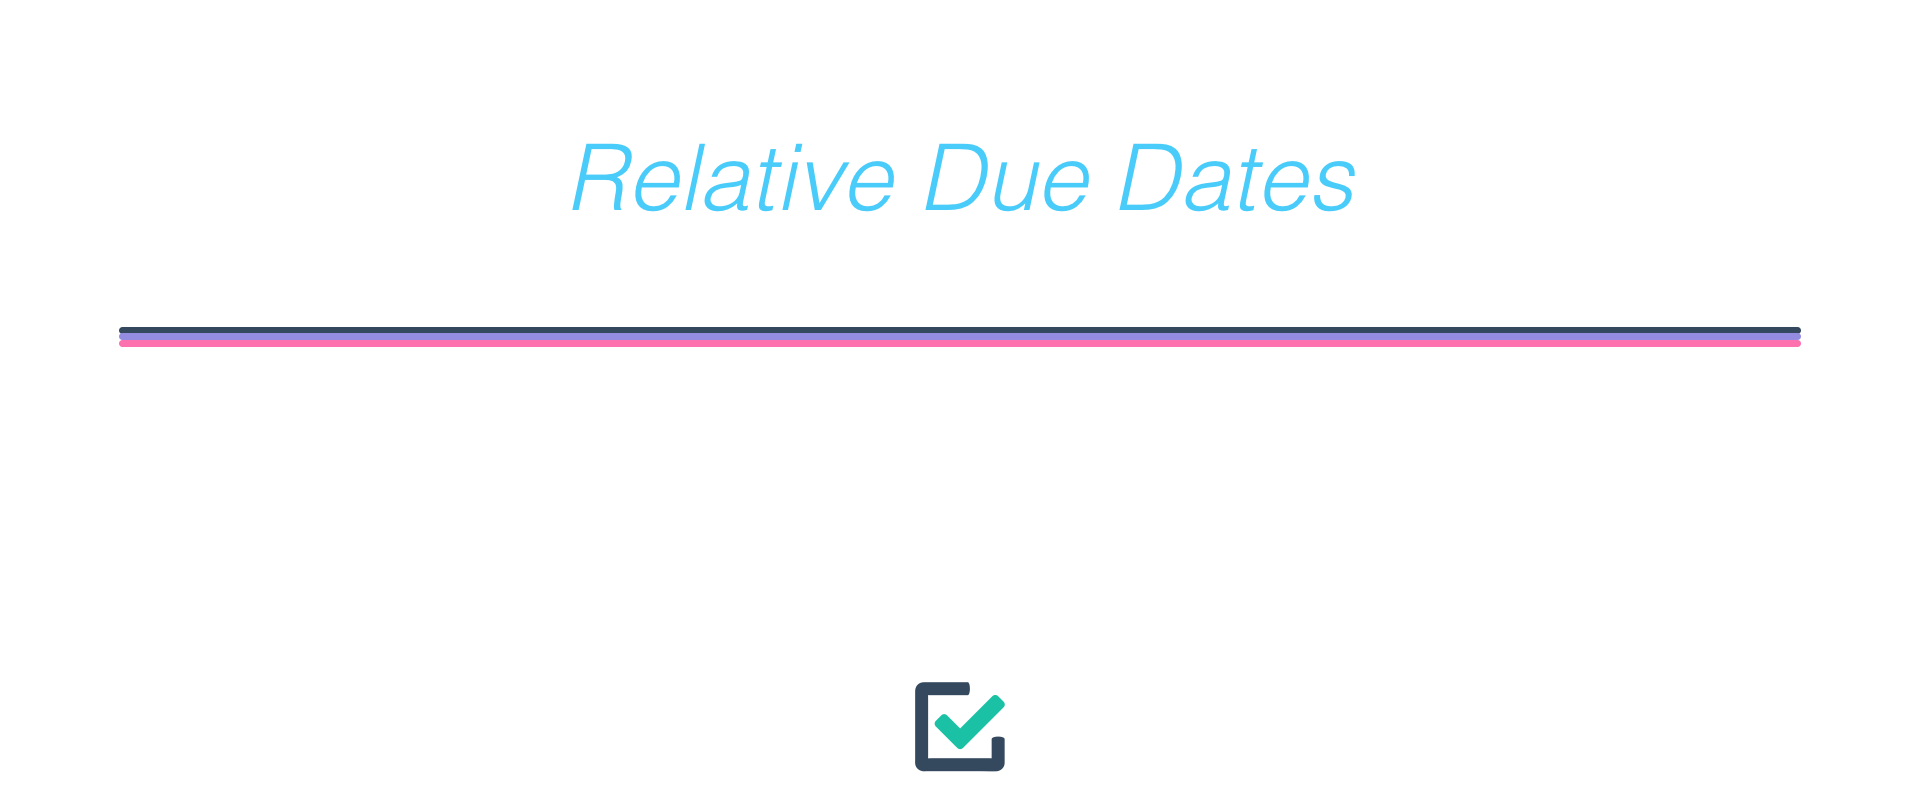 Relative due dates